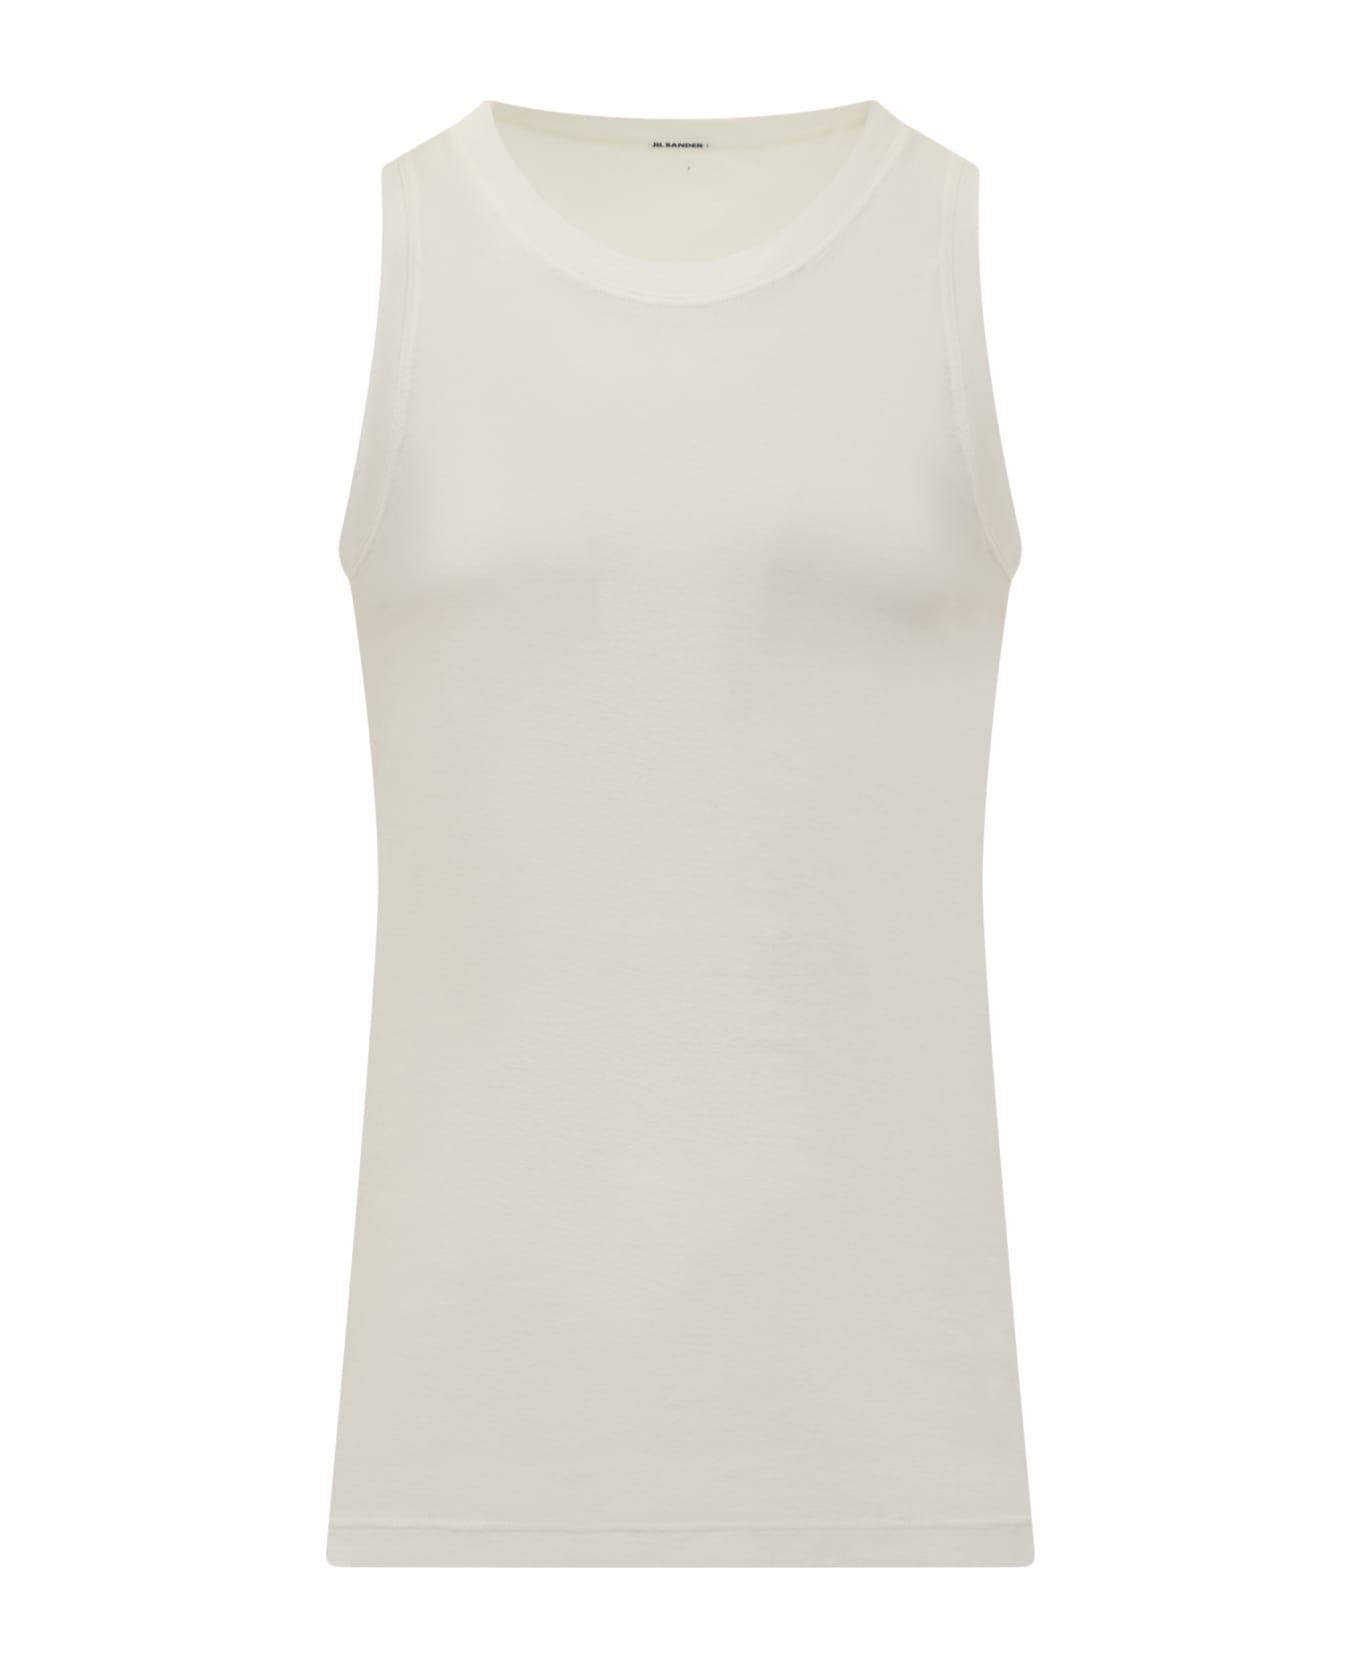 Jil Sander Kit 3 T-shirt Pack - PANNA